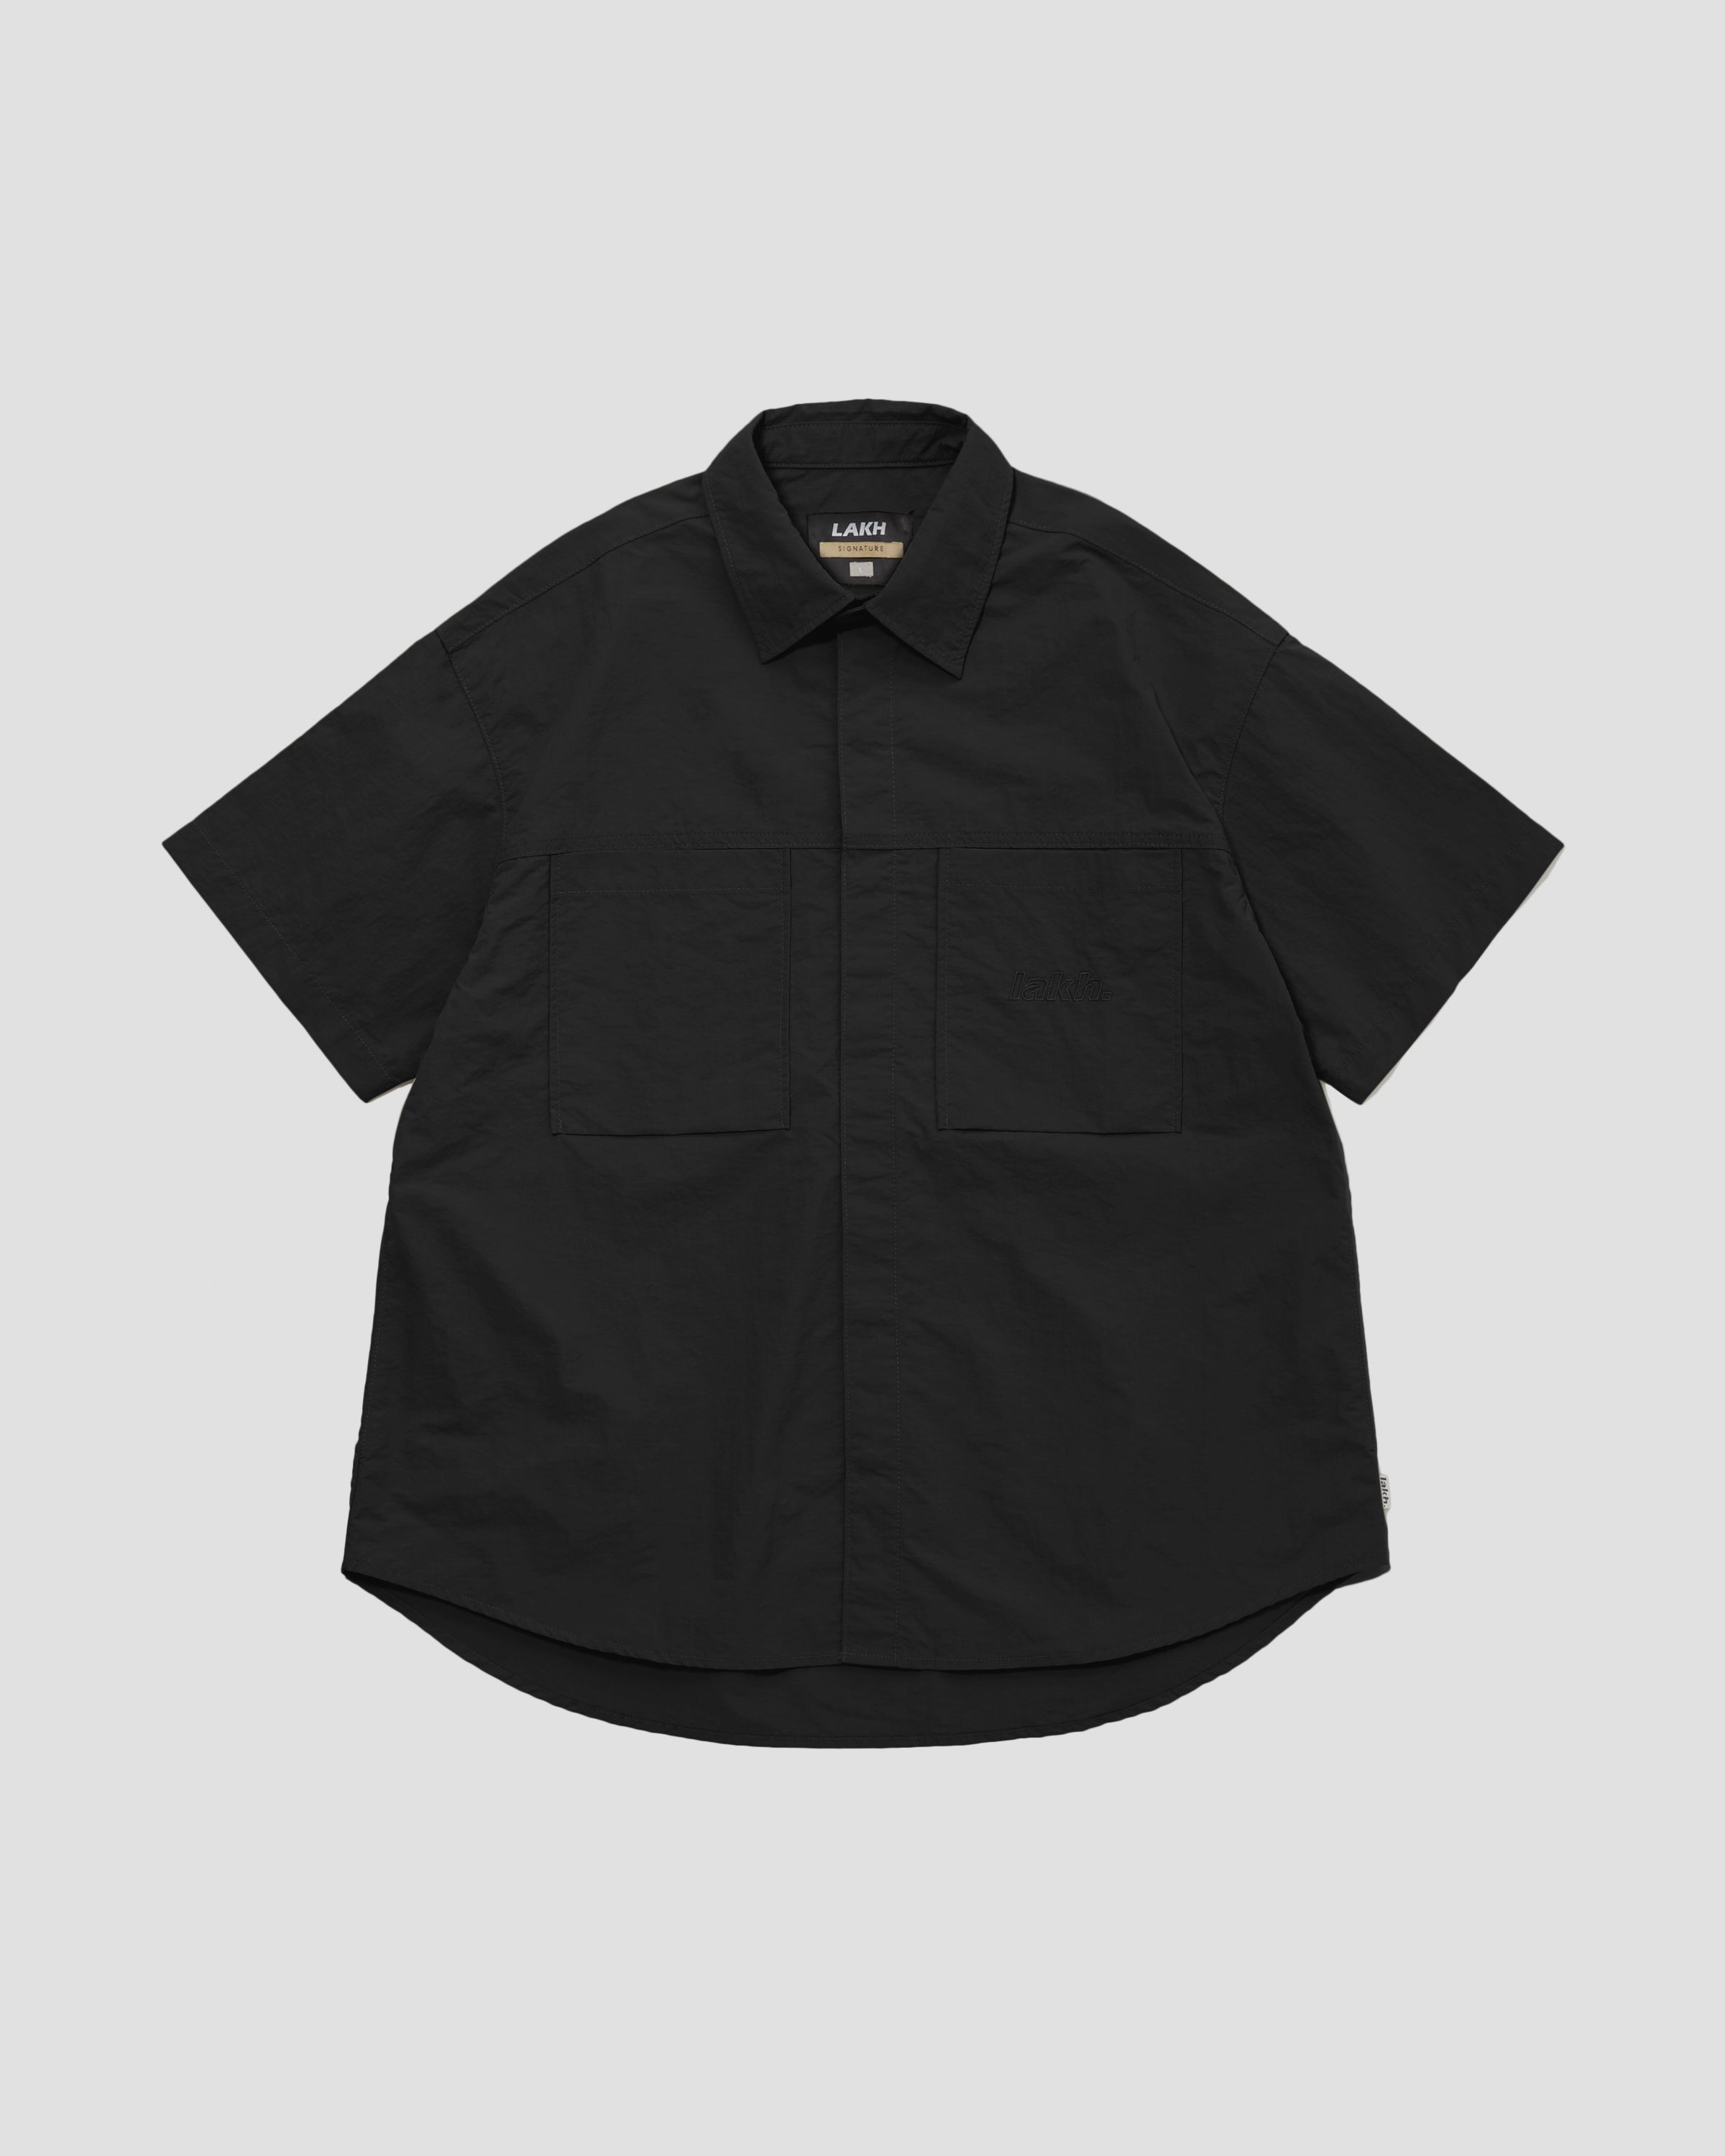 S/S Oversized Shirt - Black